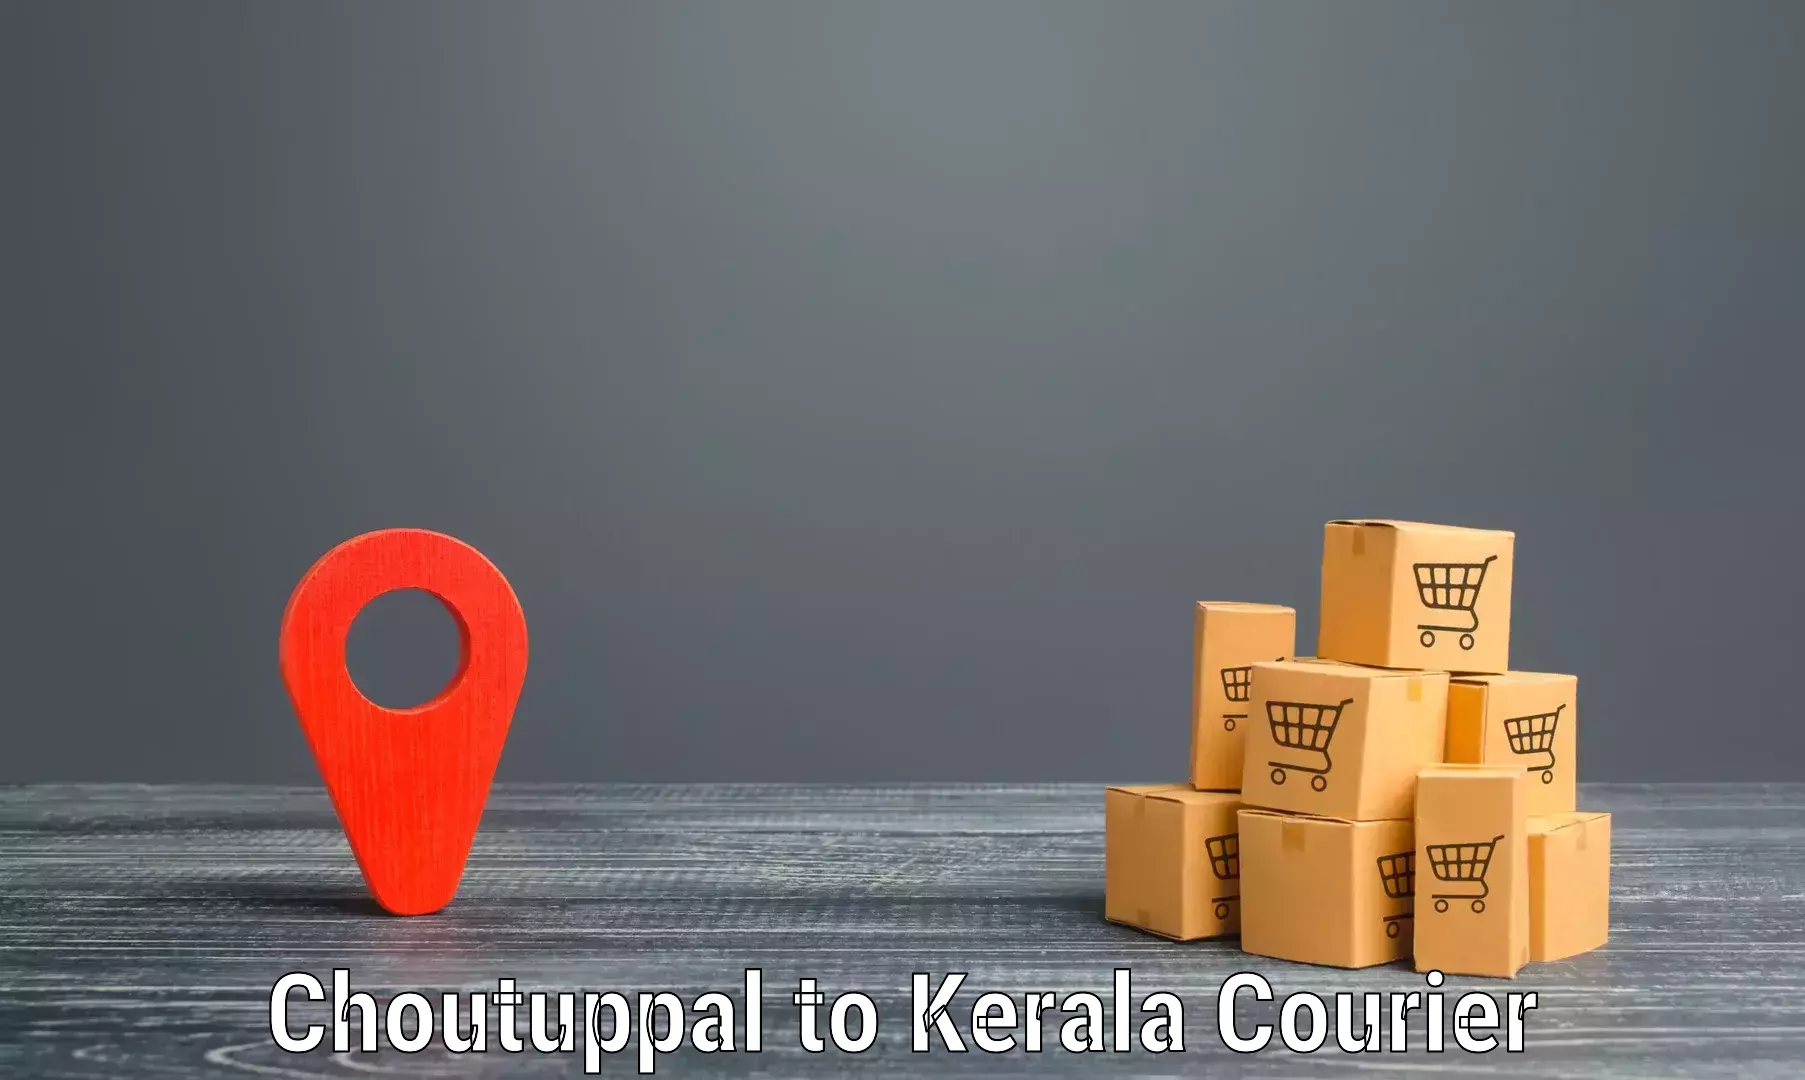 Advanced shipping network Choutuppal to Pallikkara